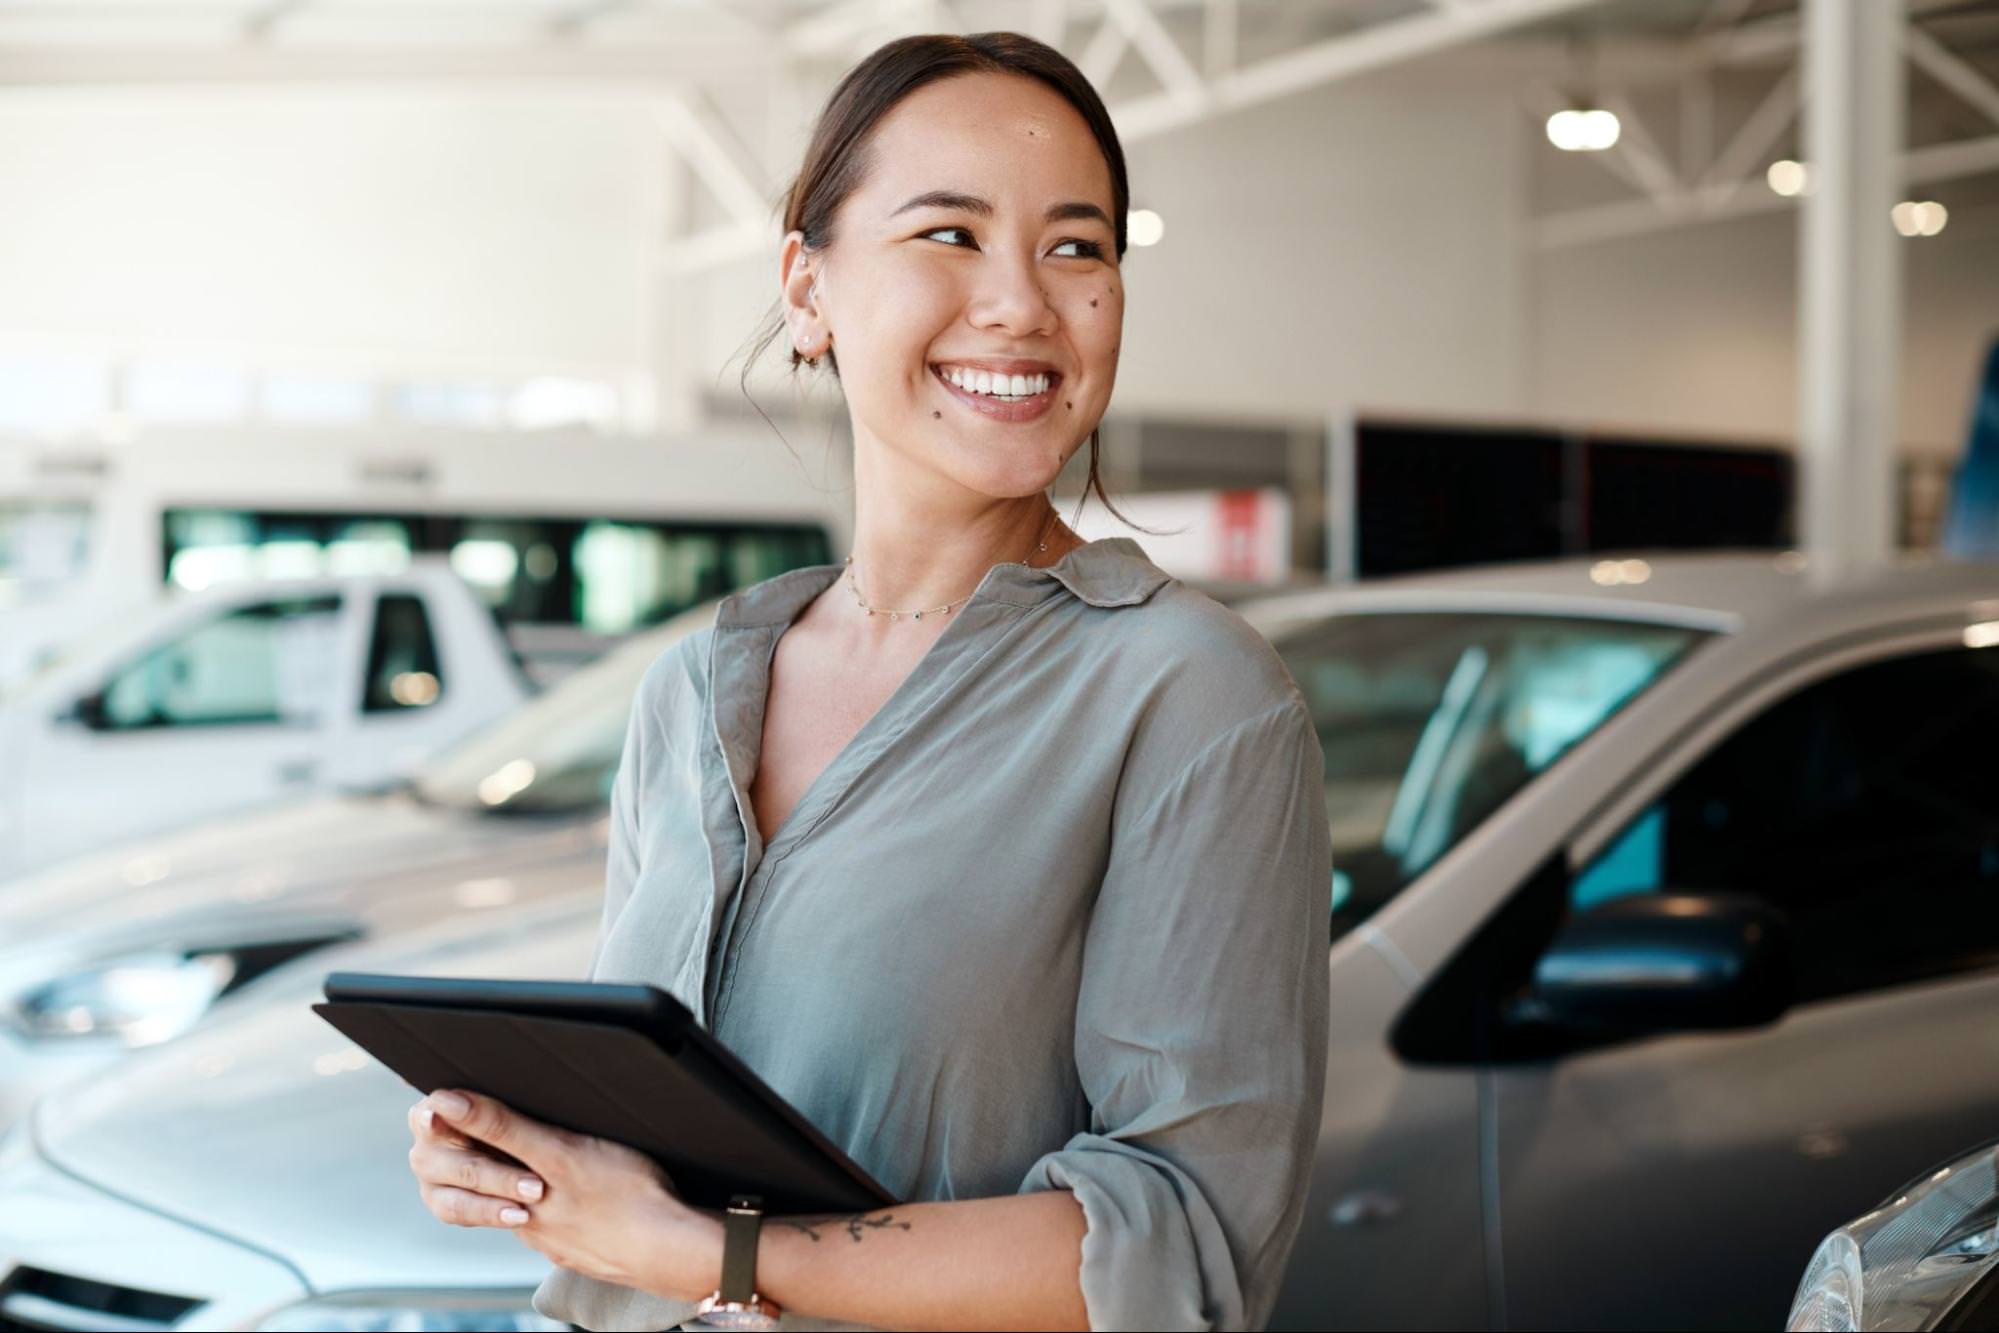 Usměvavý prodejce aut stojící v showroomu s auty v pozadí. Drží tablet, působí přátelsky a profesionálně a je připravena pomoci zákazníkům.